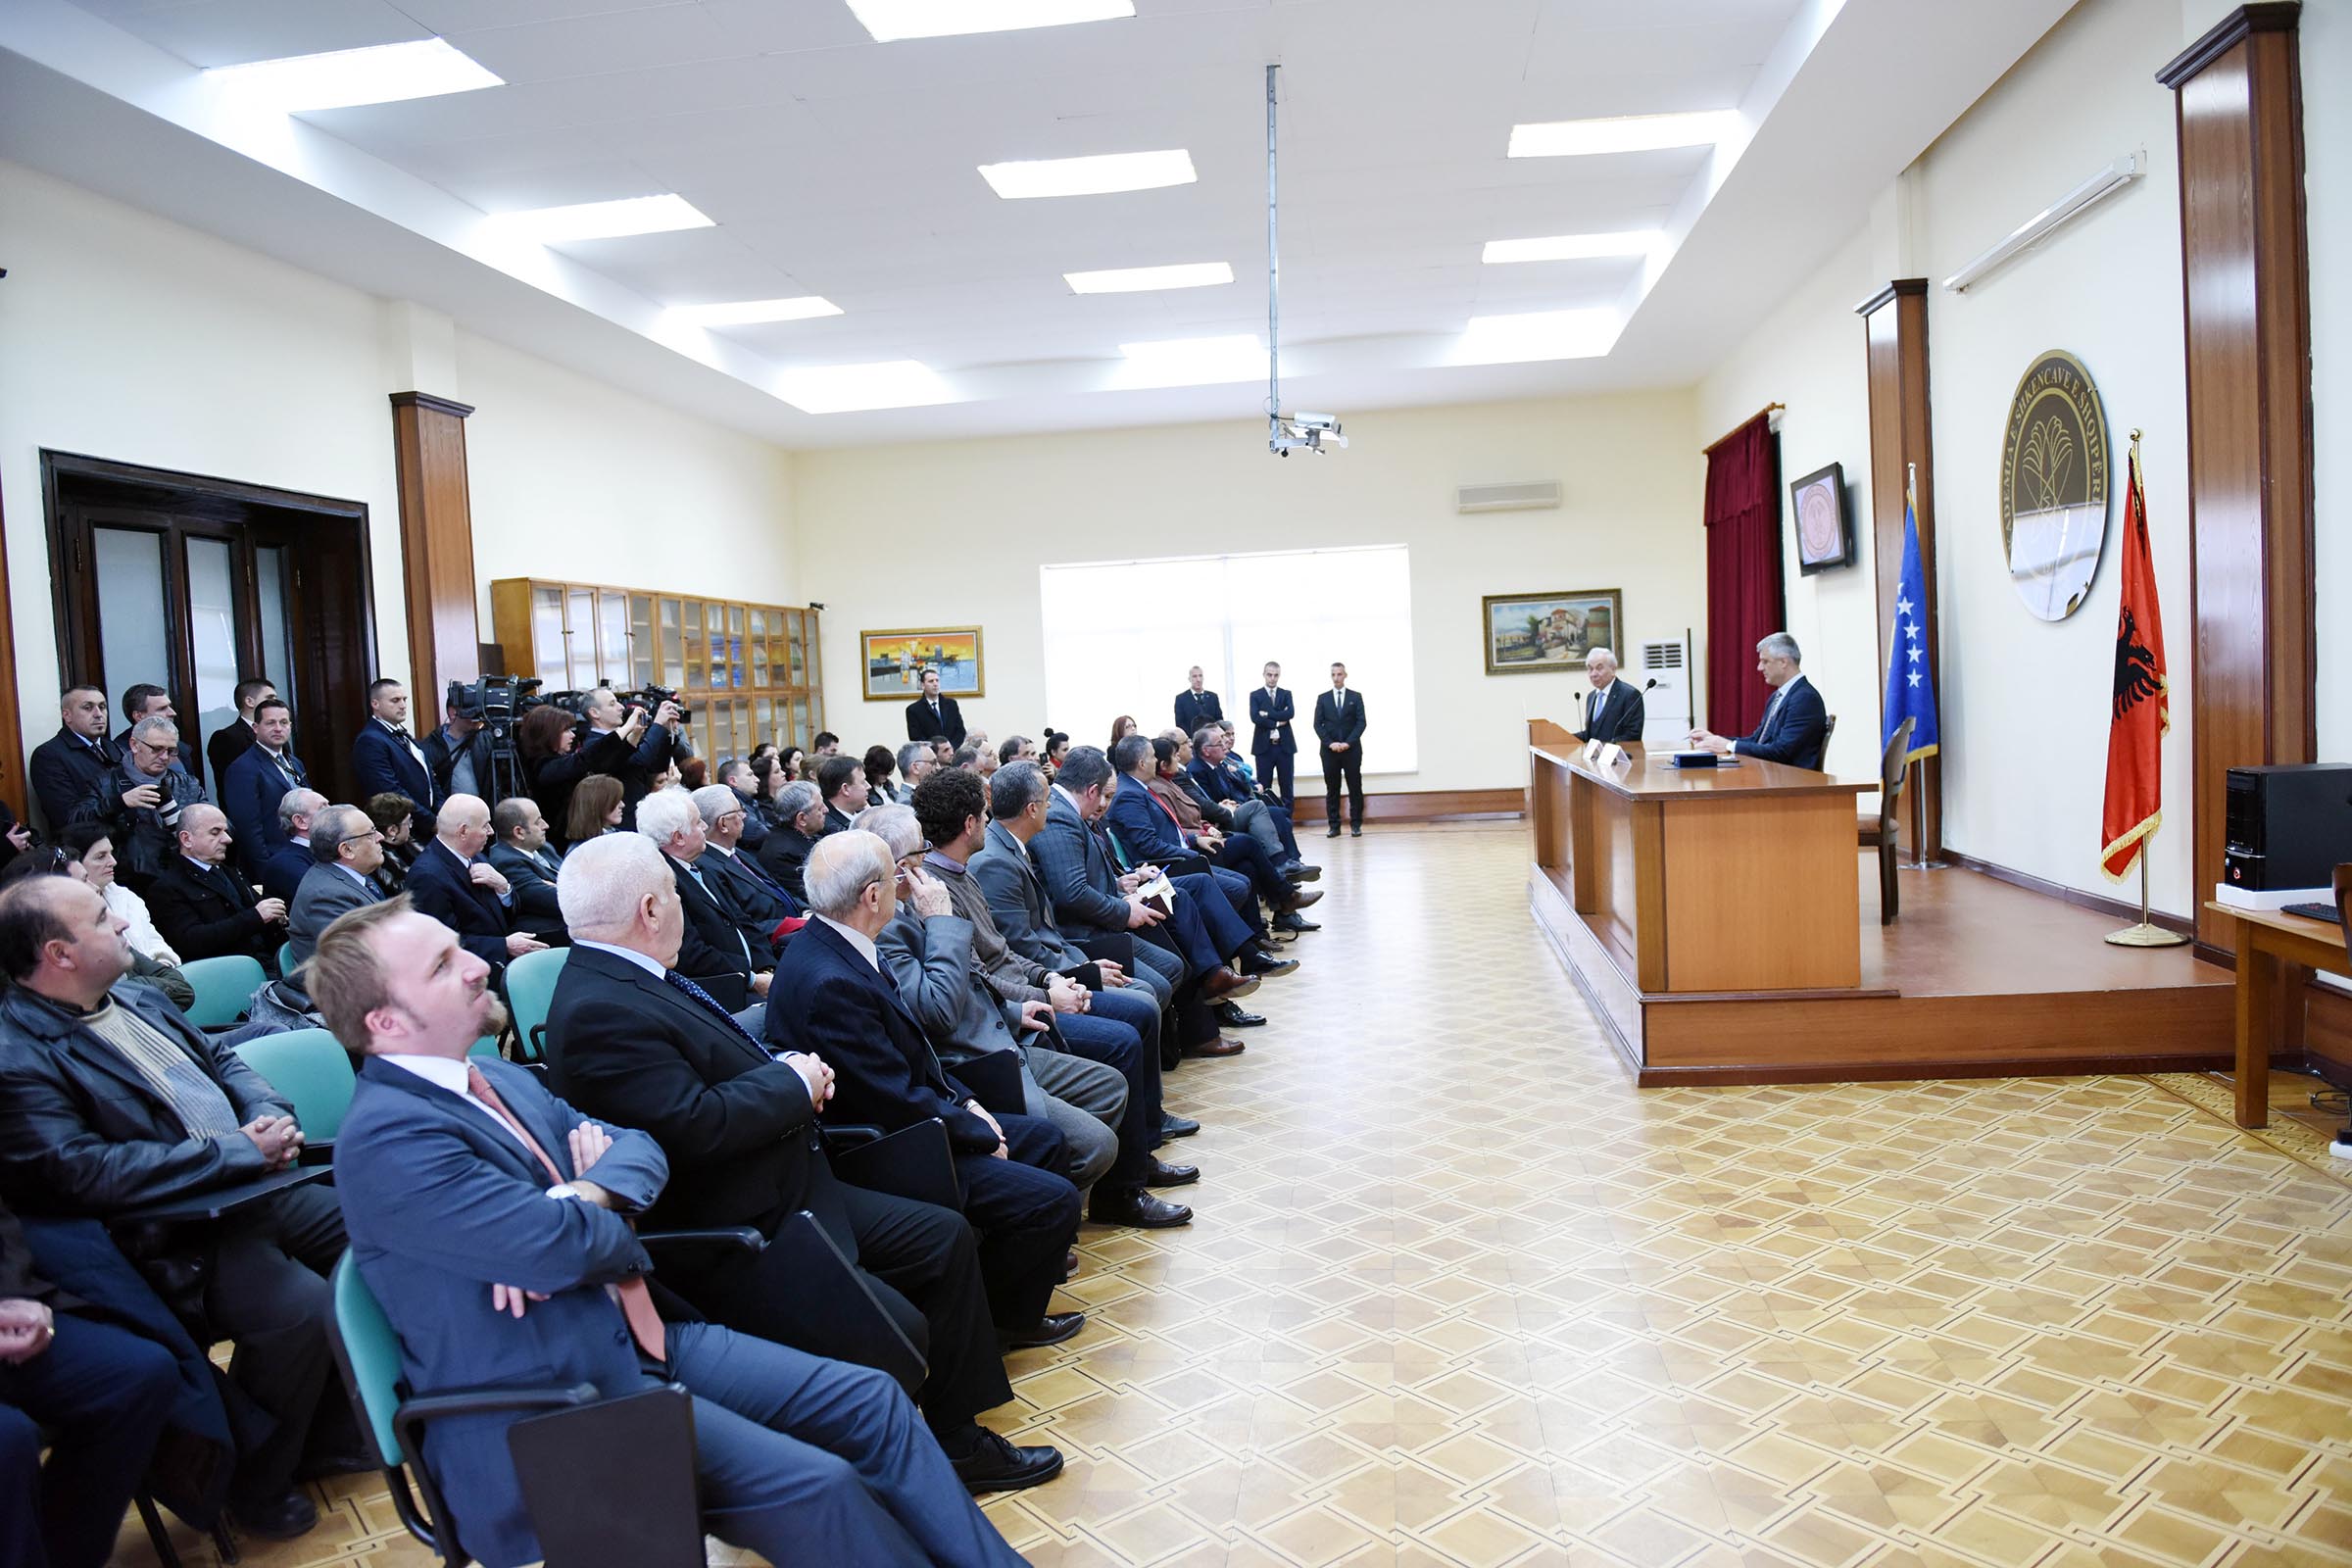 Presidenti Thaçi nderohet me medaljen "Nderi i Akademisë" nga Akademia e Shkencave të Shqipërisë